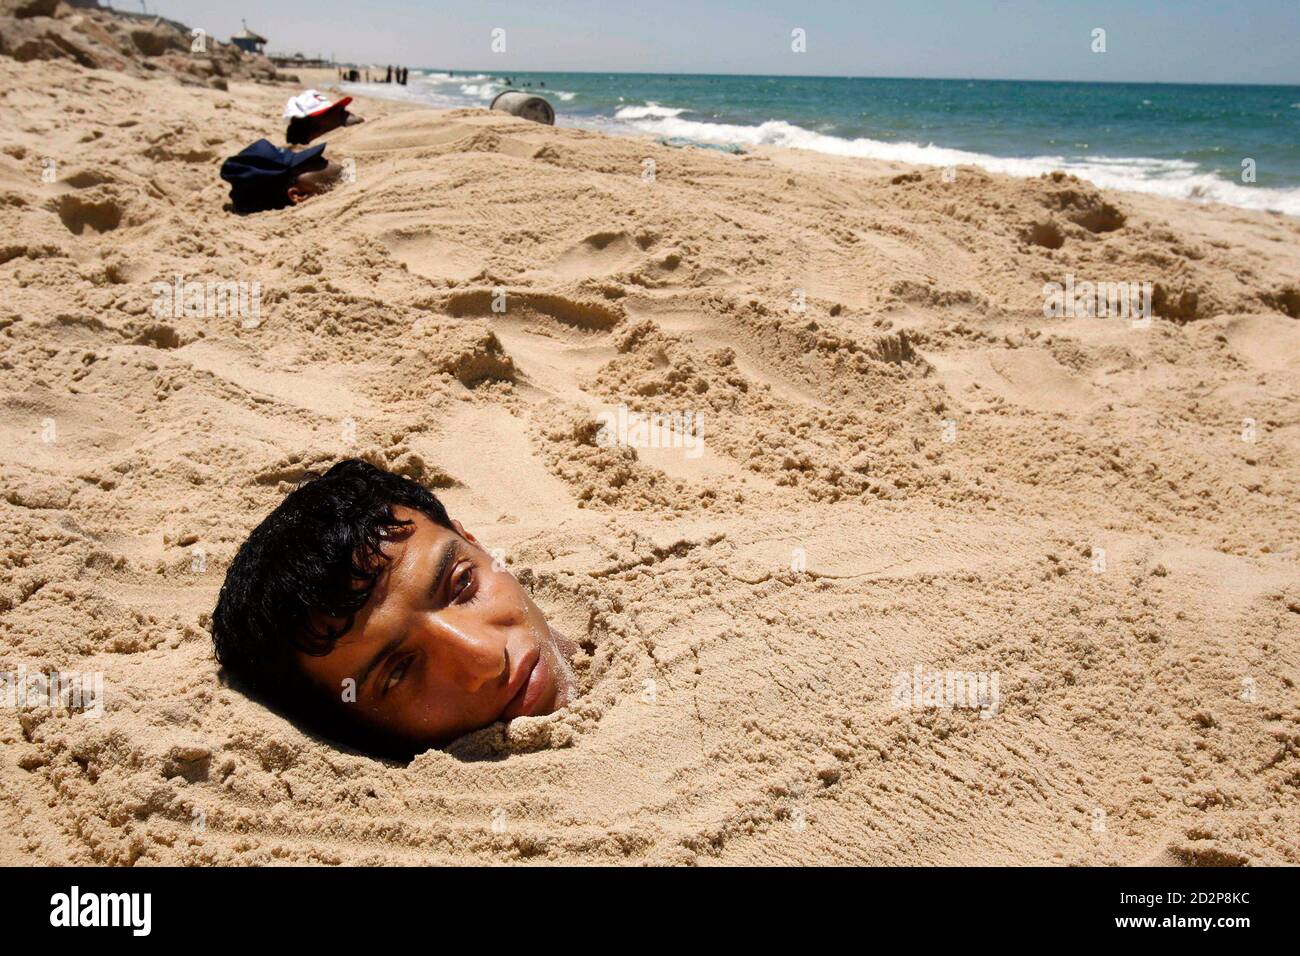 Человек без дна. Человек в песке на пляже. Человек закопанный в песок на пляже.